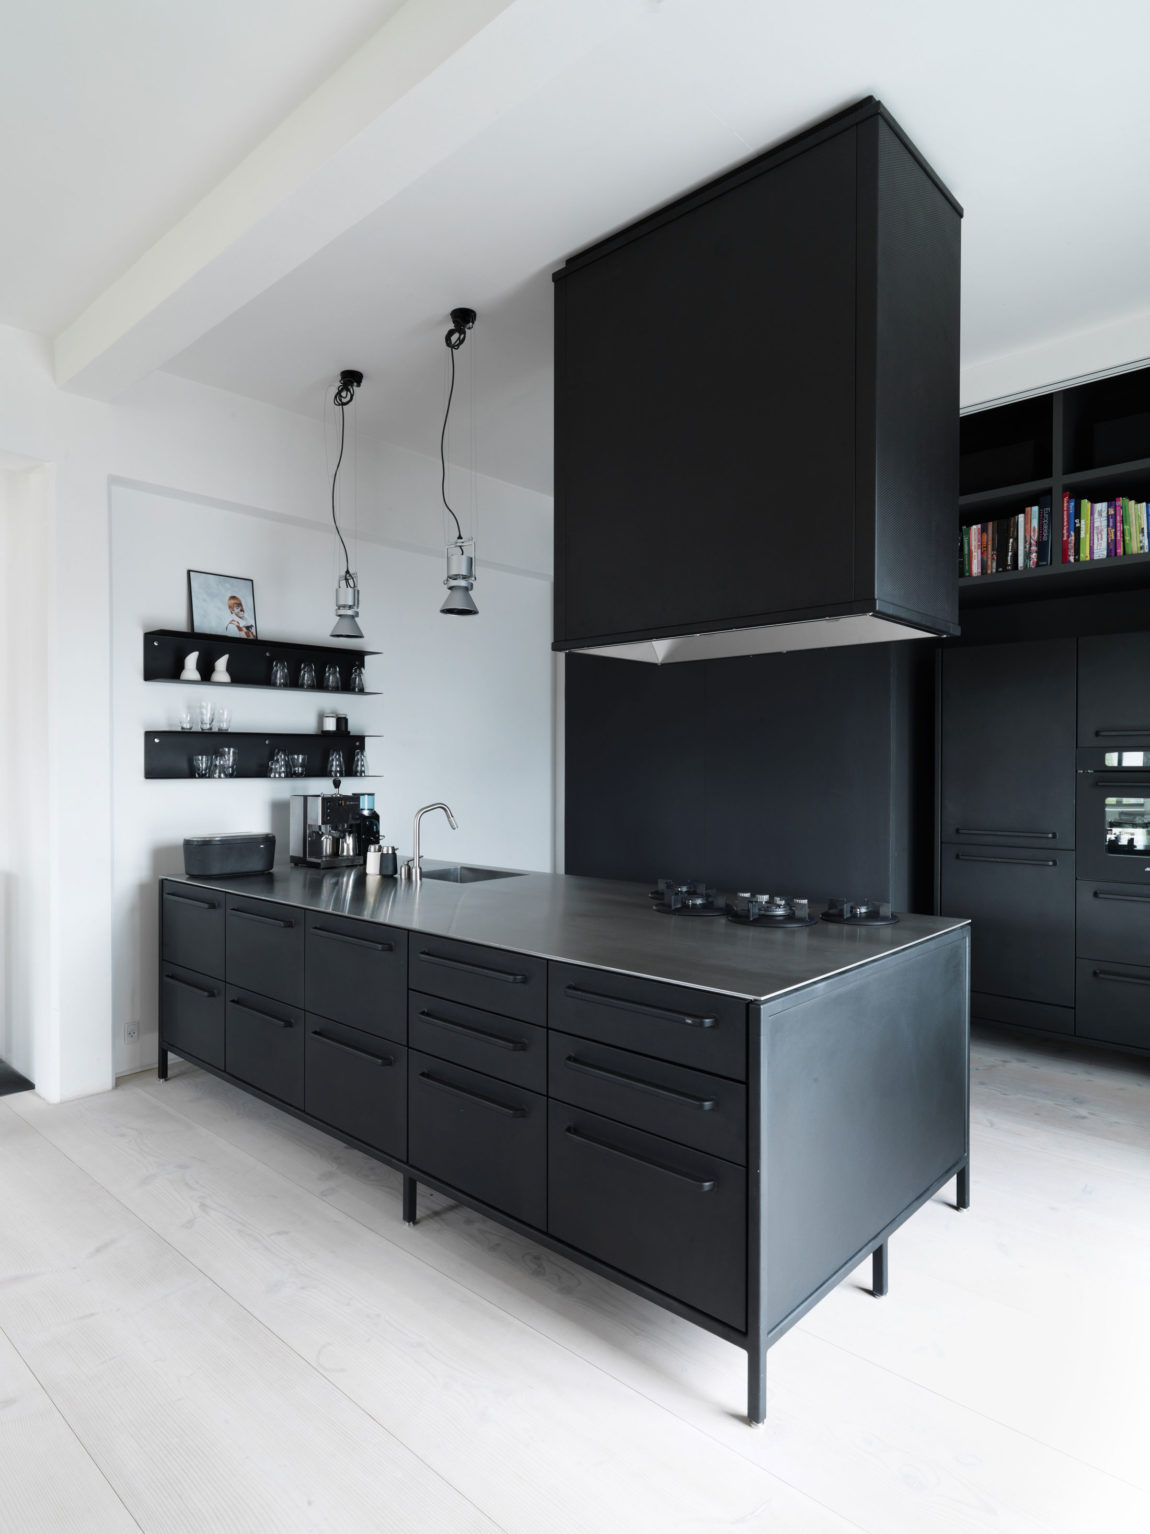 黑白简约现代公寓厨房装修效果图